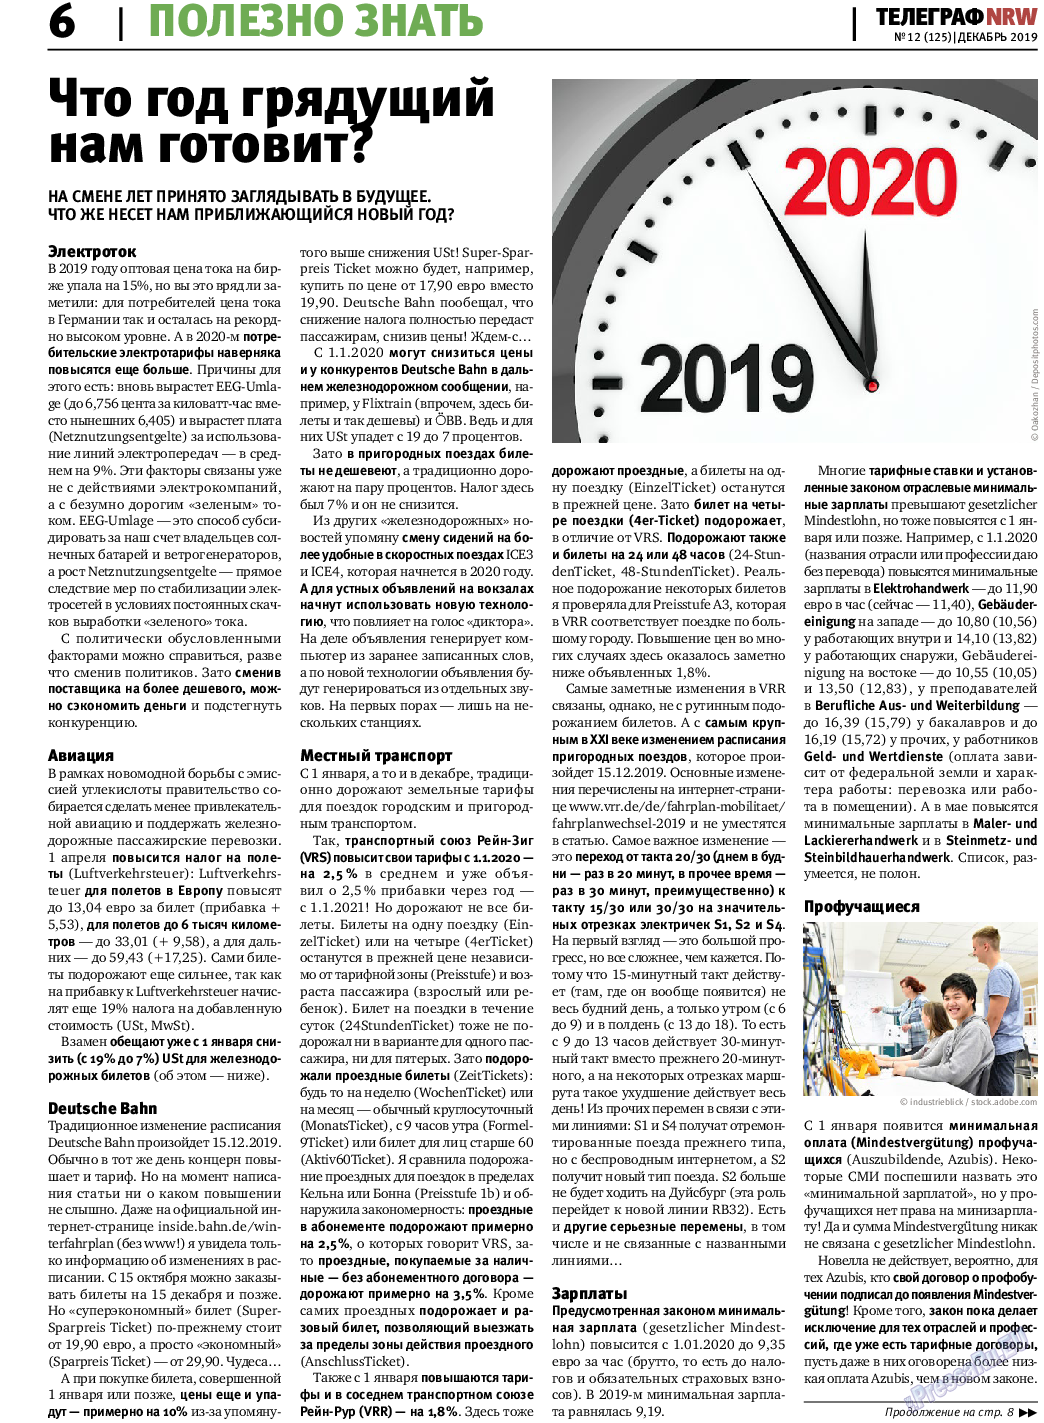 Телеграф NRW (газета). 2019 год, номер 12, стр. 6